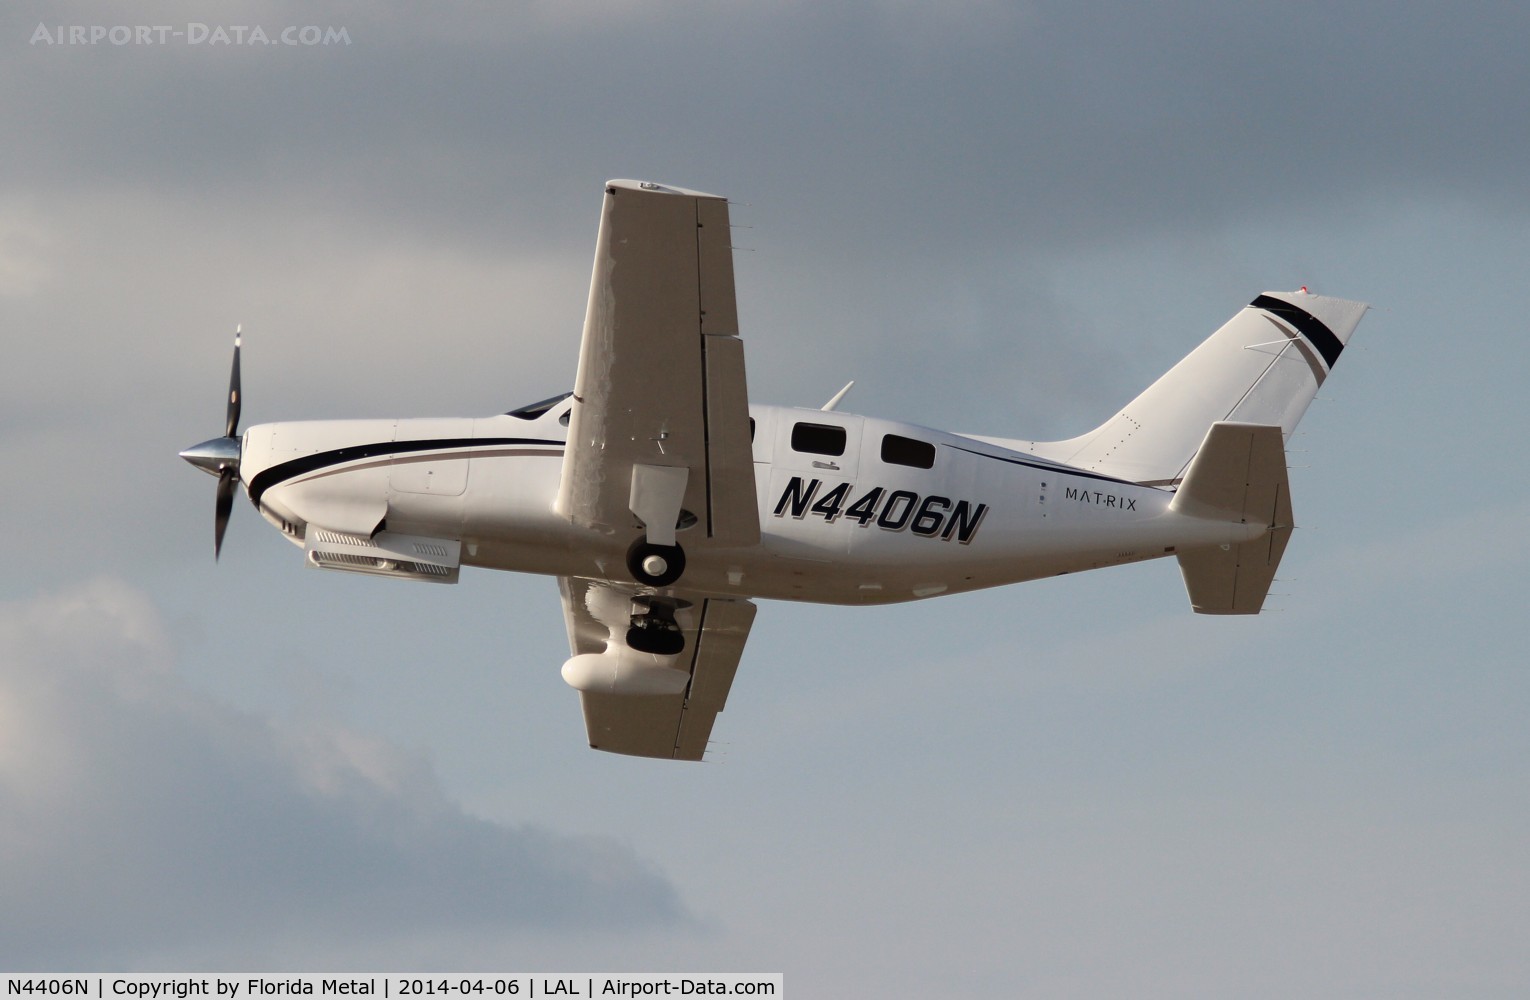 N4406N, 2013 Piper PA-46R-350T Malibu Matrix C/N 4692199, PA-46R-350T